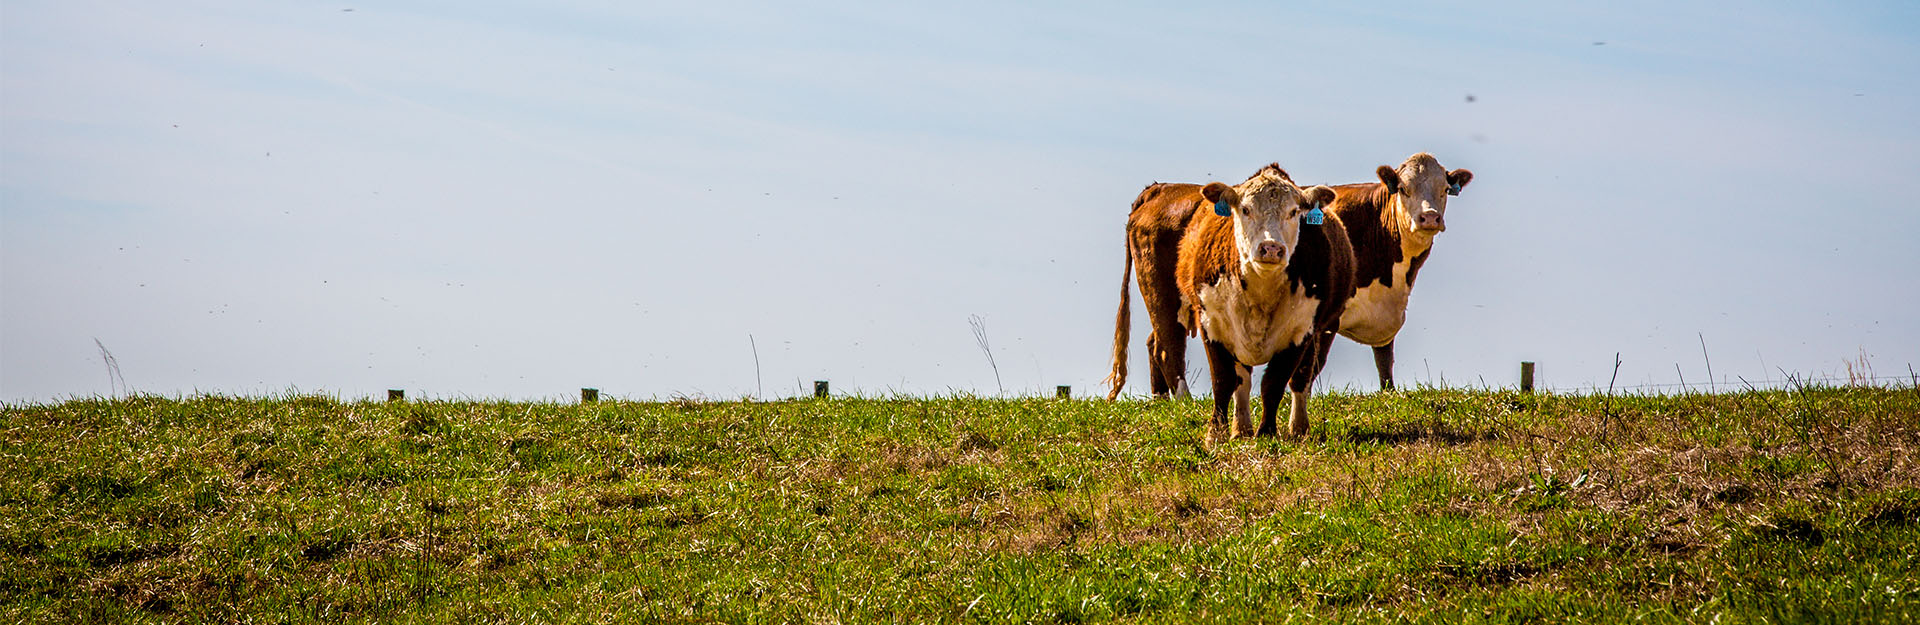 bulls in field